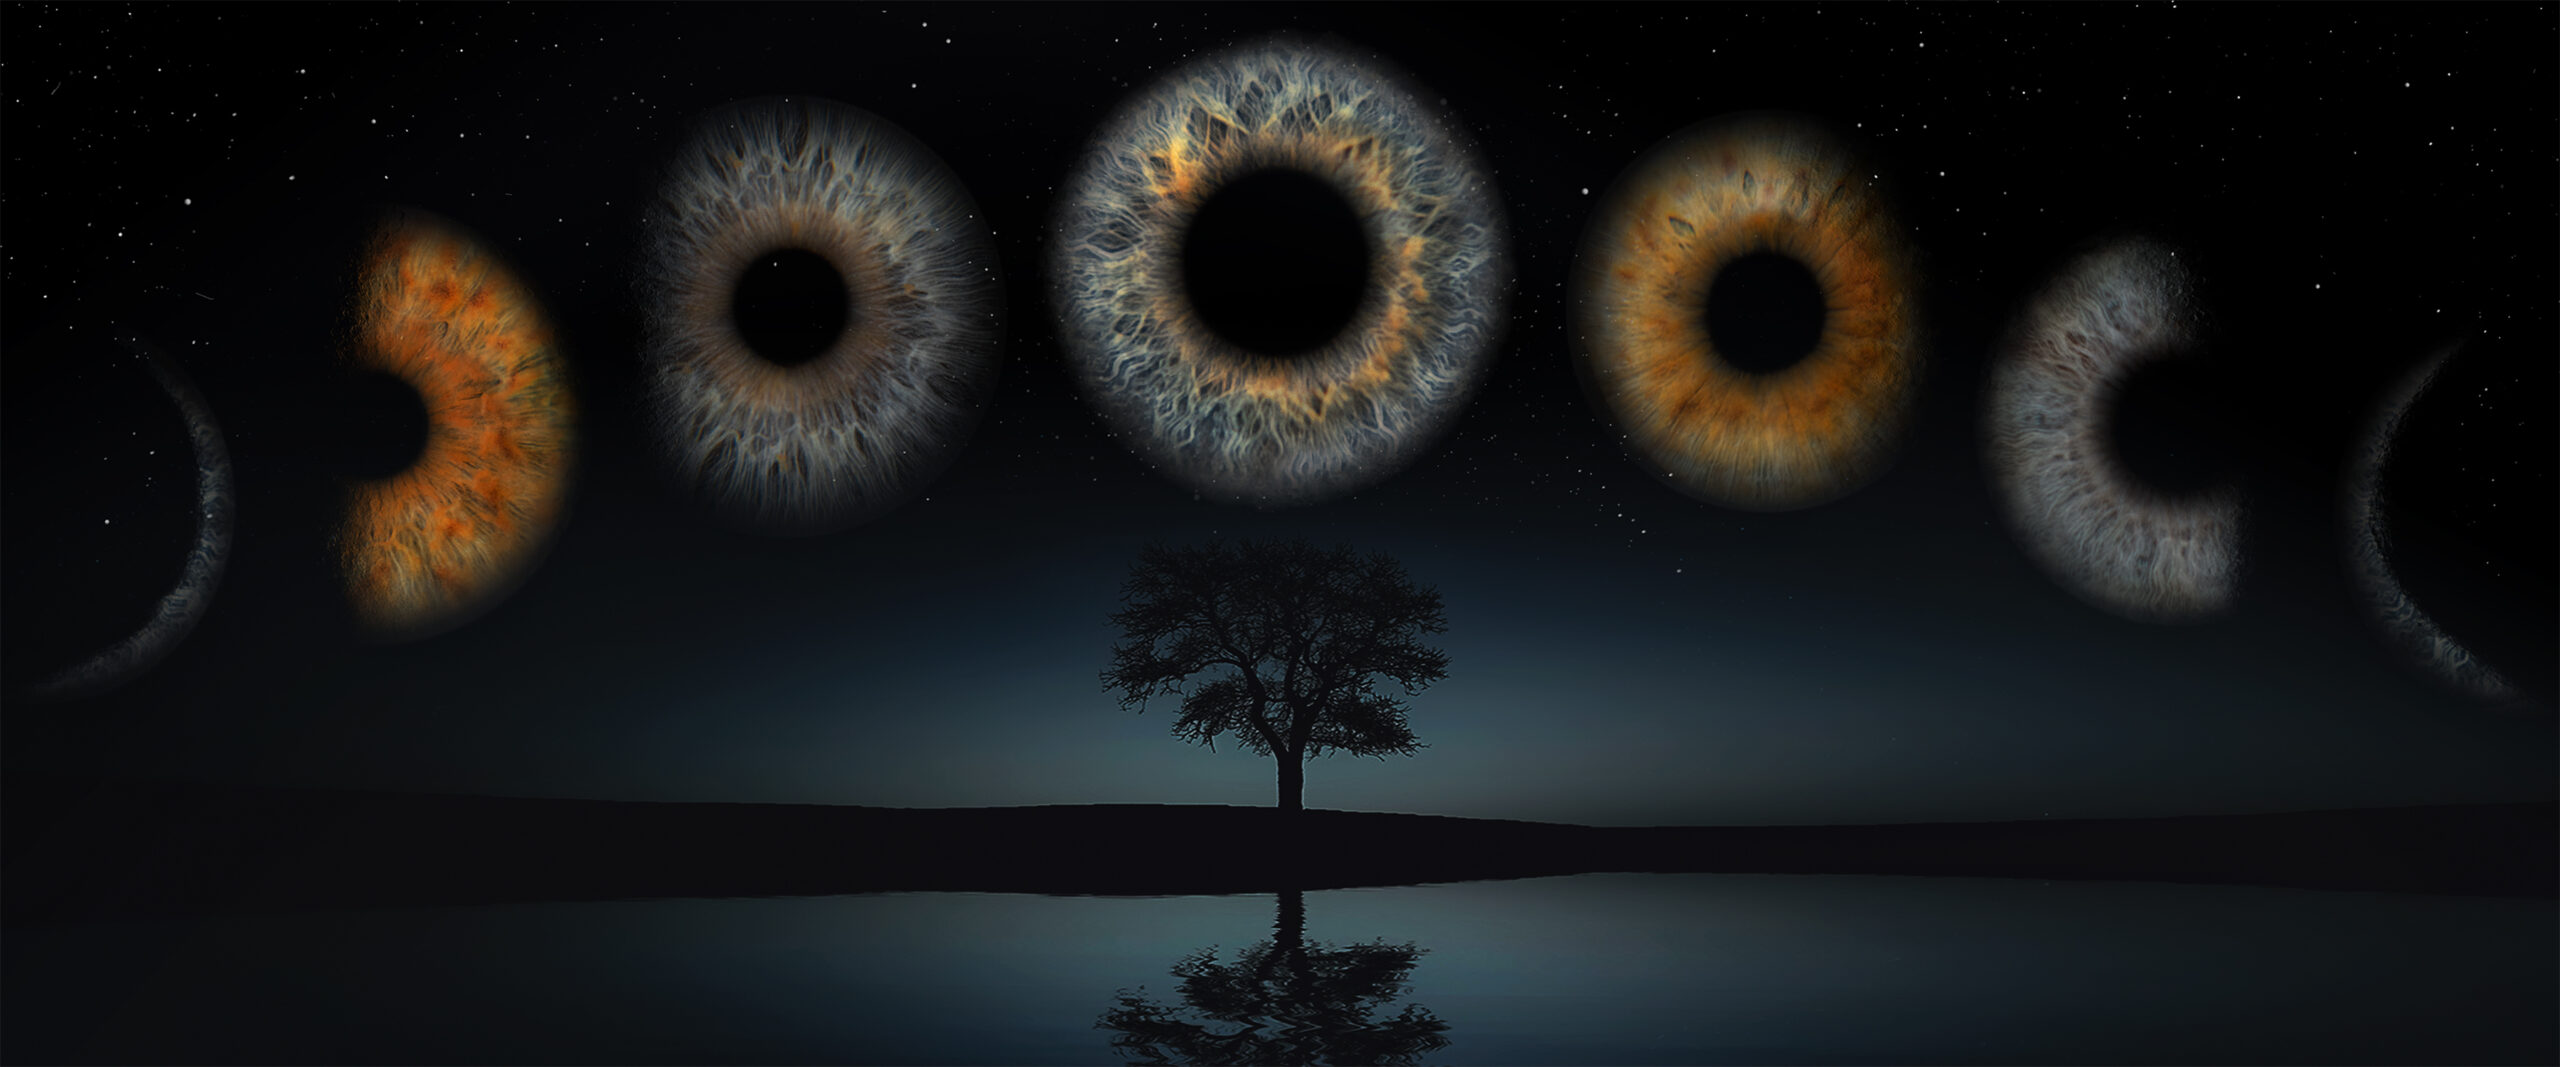 Irisfotografie Mondphasen mit See und Baum